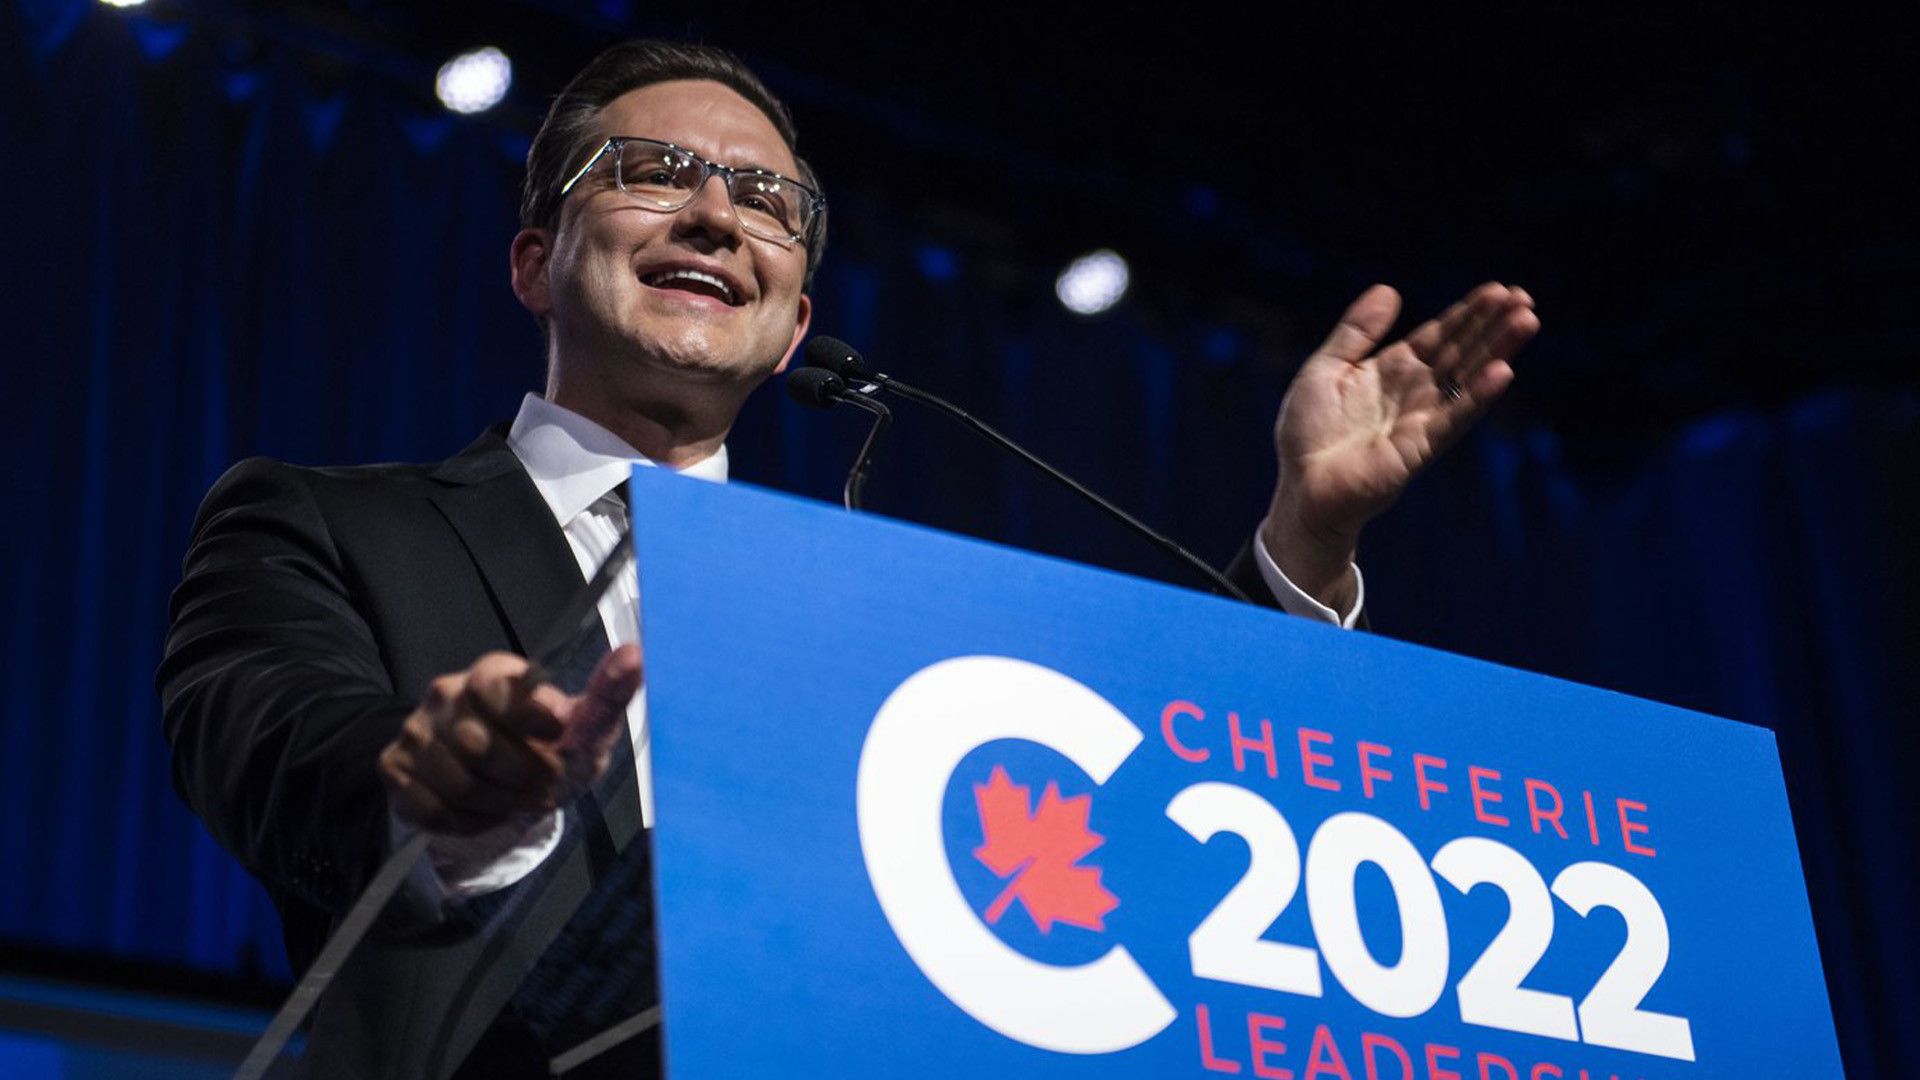 Le chef du Parti conservateur du Canada, Pierre Poilievre, prononce un discours après avoir été annoncé vainqueur du vote à la direction du Parti conservateur du Canada, à Ottawa, le samedi 10 septembre 2022.